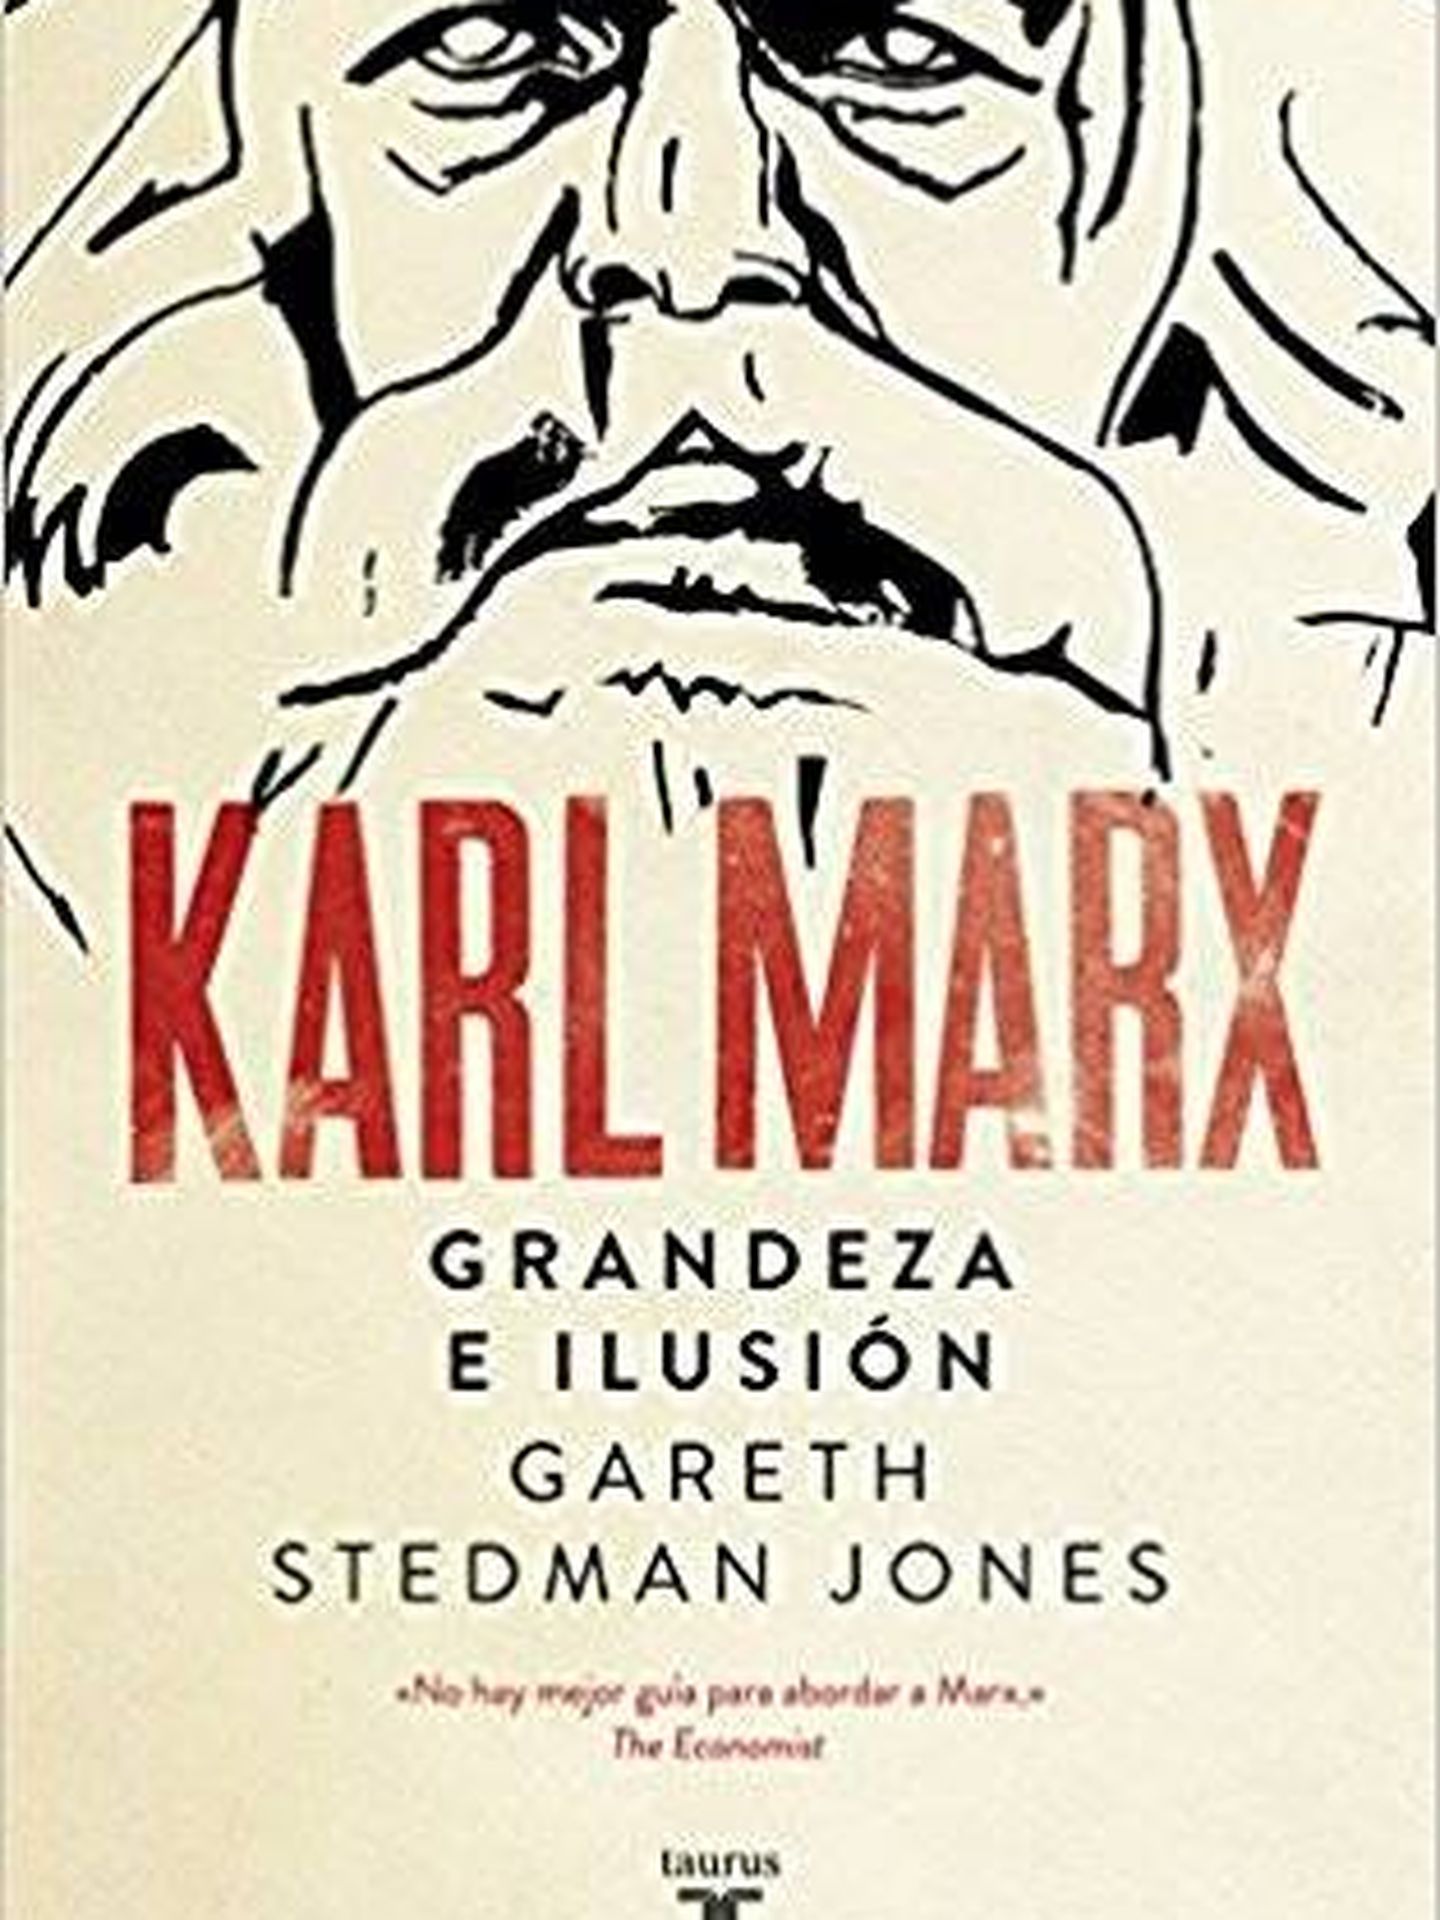 'Karl Marx' (Debate)